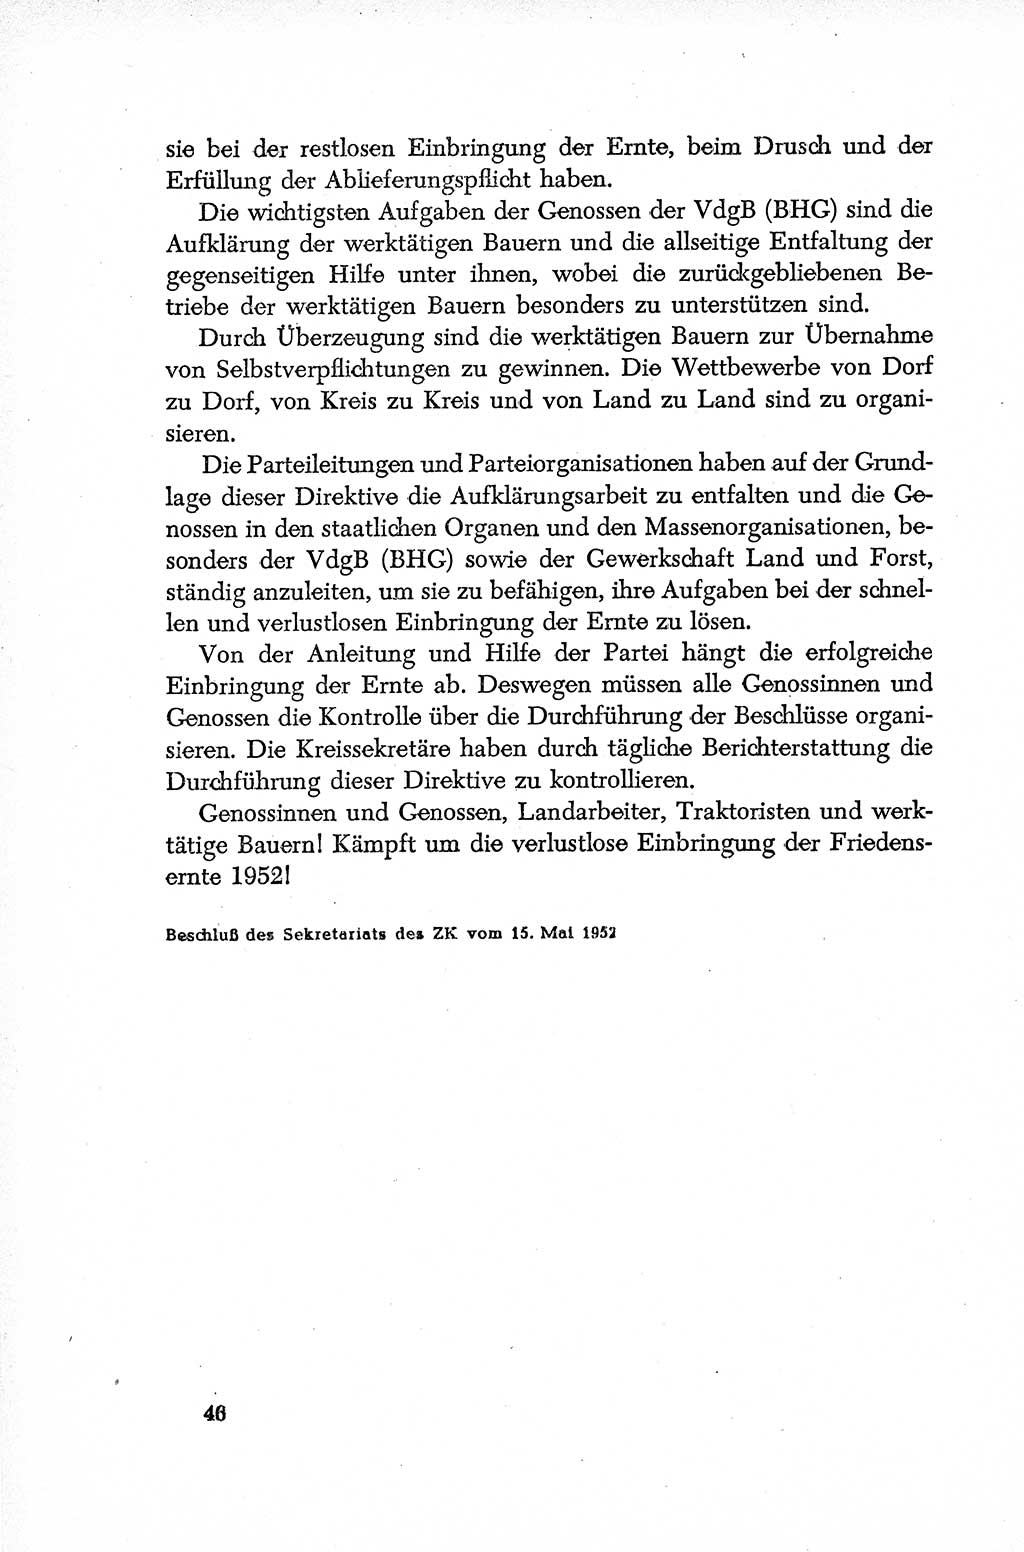 Dokumente der Sozialistischen Einheitspartei Deutschlands (SED) [Deutsche Demokratische Republik (DDR)] 1952-1953, Seite 46 (Dok. SED DDR 1952-1953, S. 46)